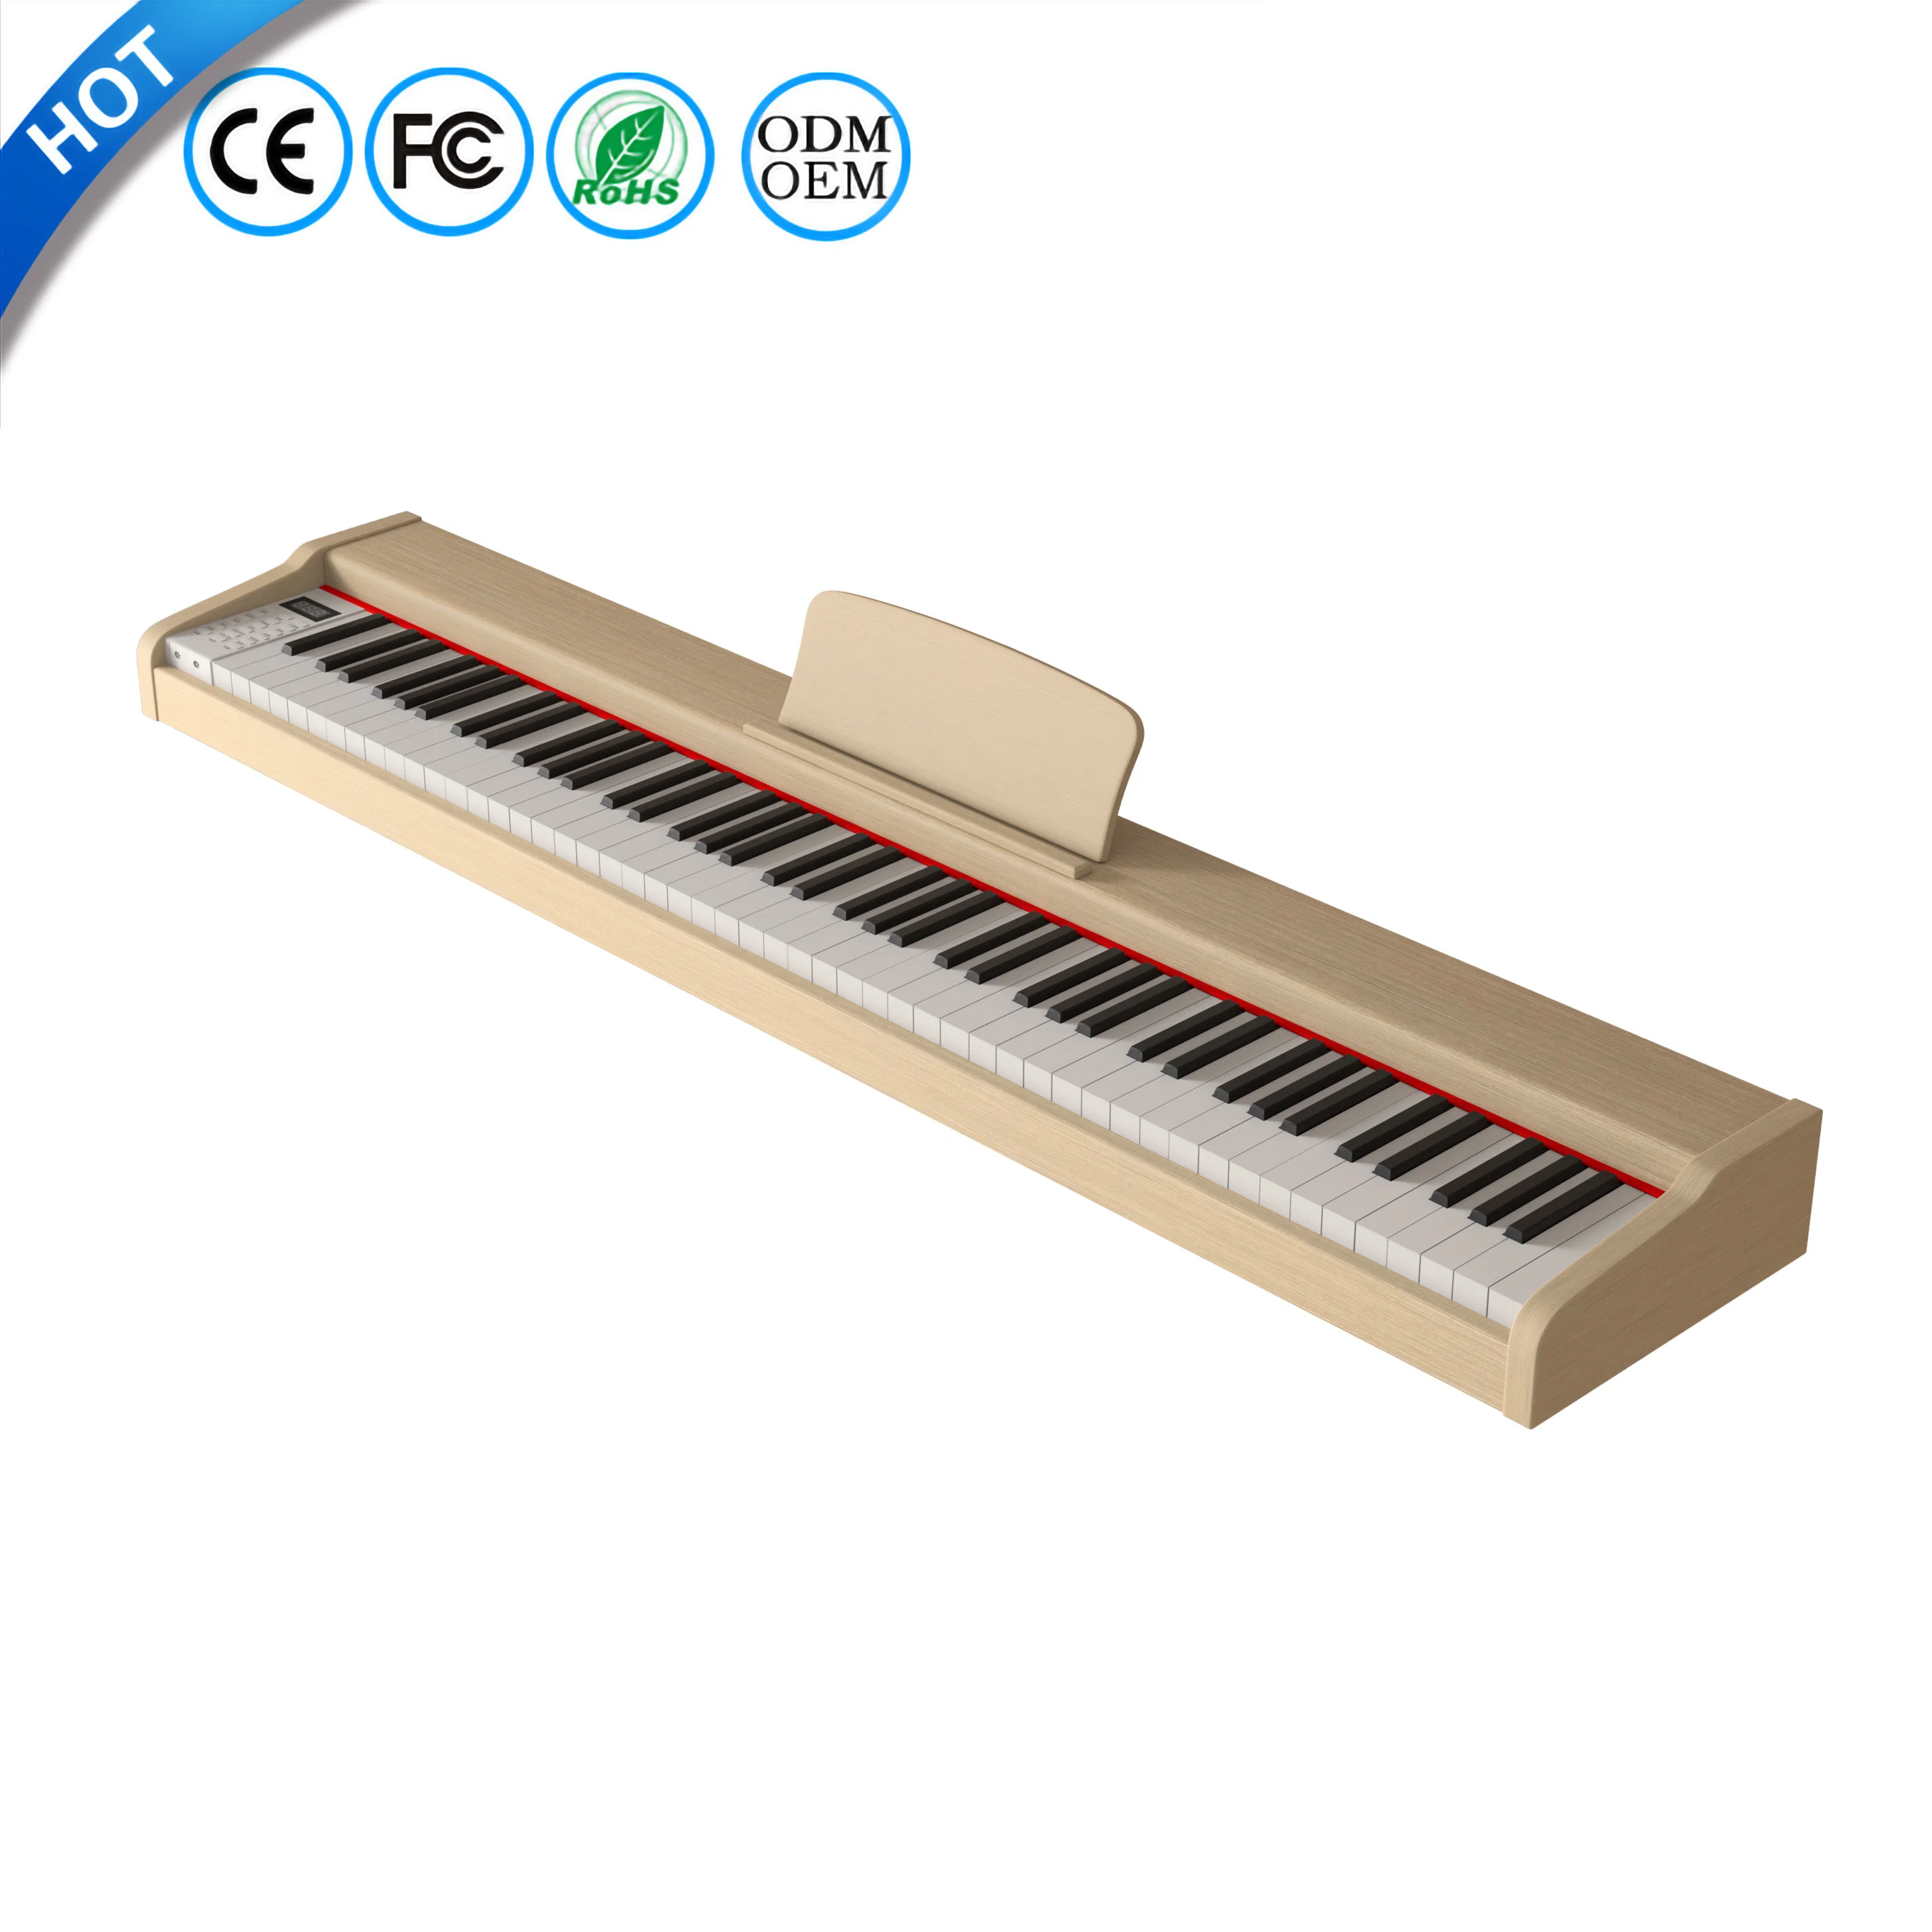 Digital Piano 88 gewichtete Tasten MIDI Controller Keyboard aufrechtes Klavier Preis Elektrische OEM Piano Tastatur